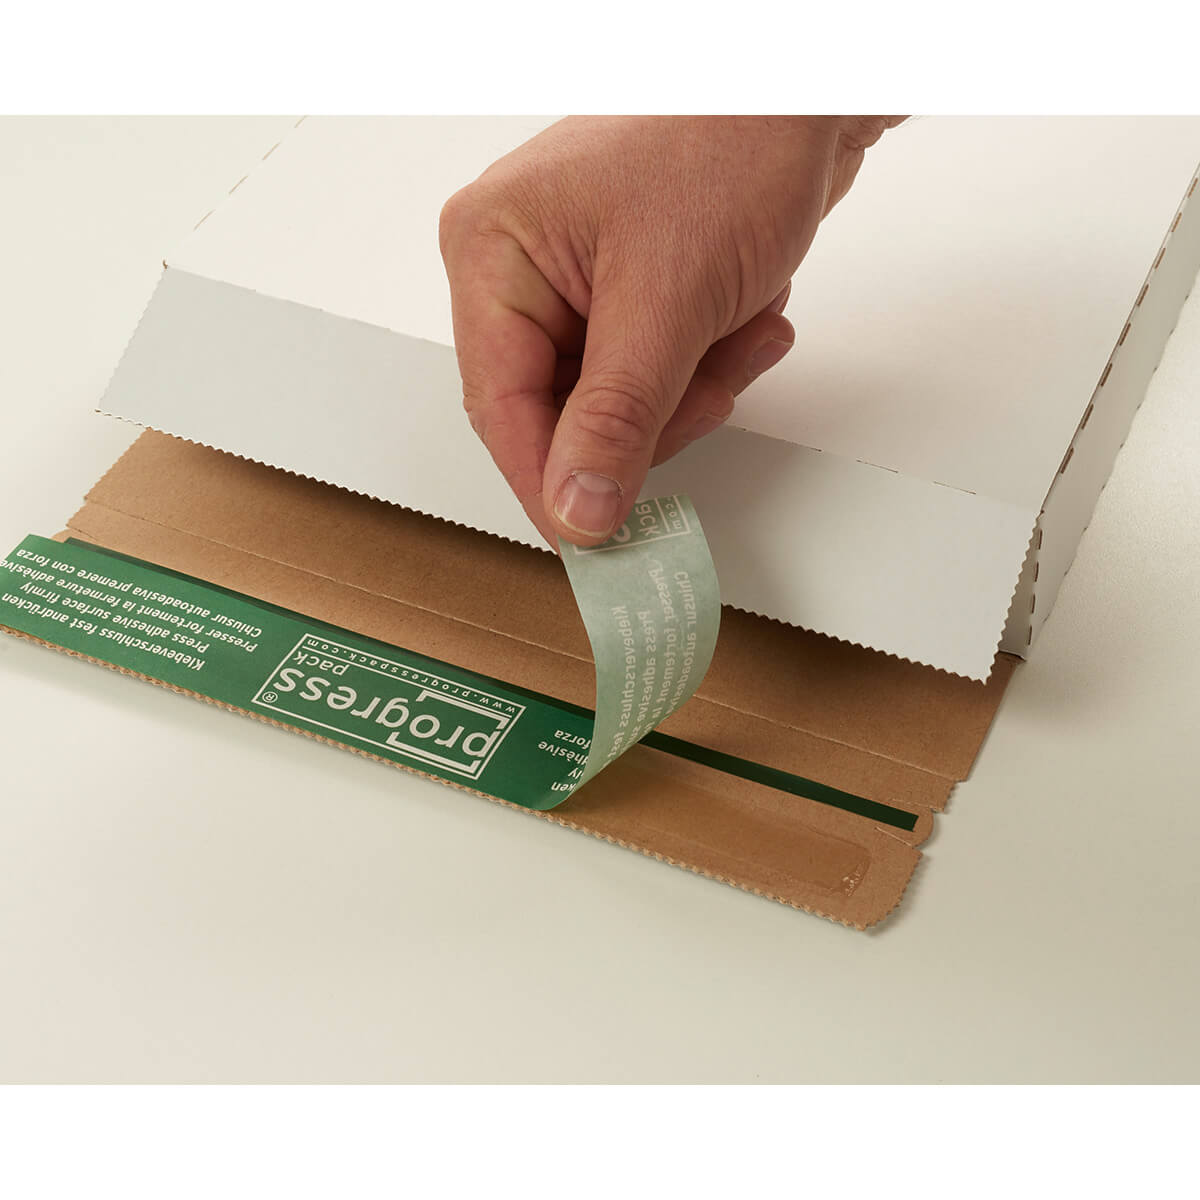 Briefbox Großbriefkarton 345x245x15 mm DIN A4 selbstklebend + Aufreißfaden weiß - progressPACK